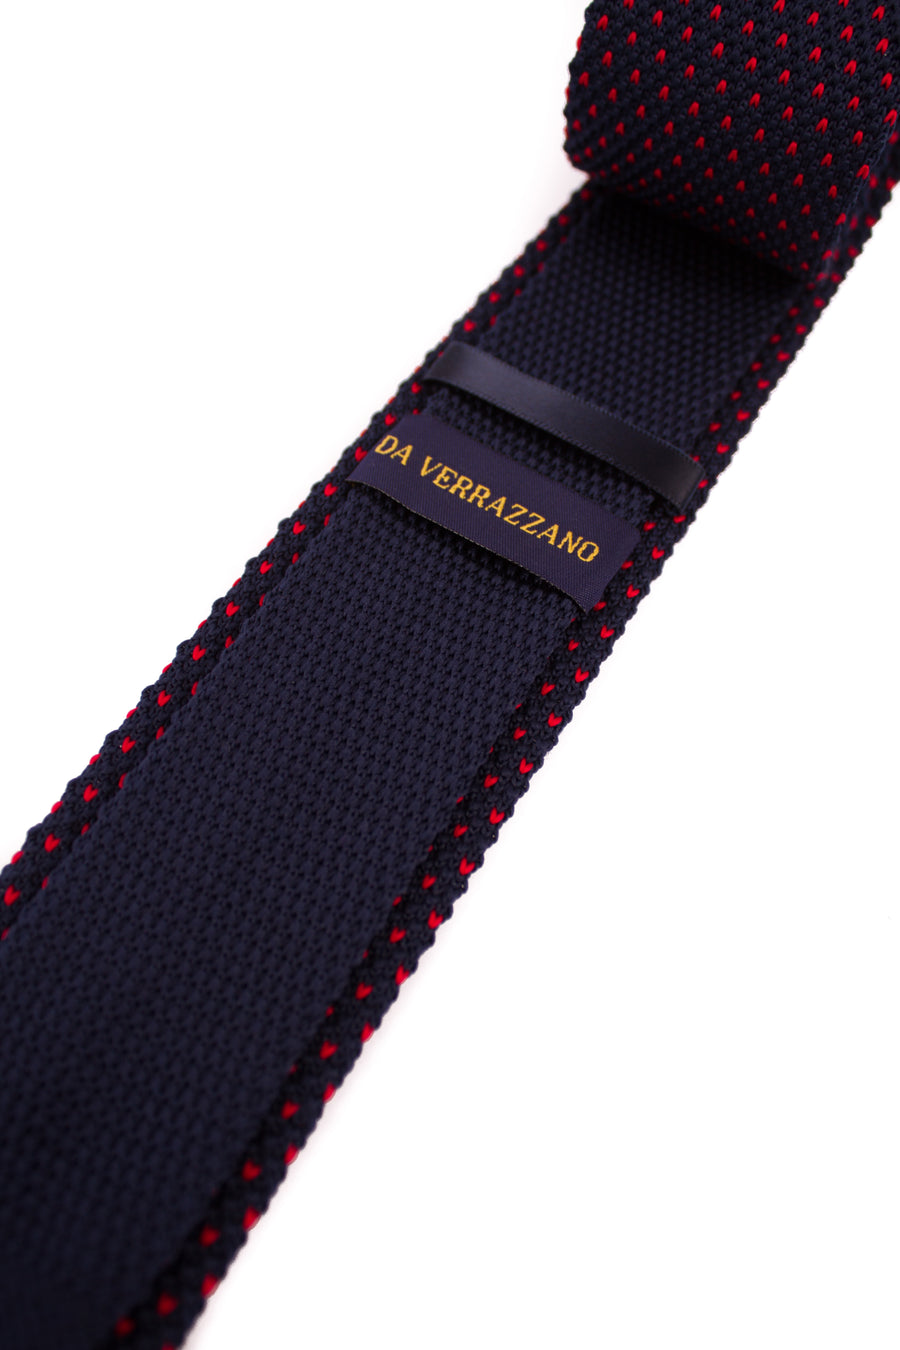 Navy Red Dot Knitted Necktie - Gentlemen's Crate